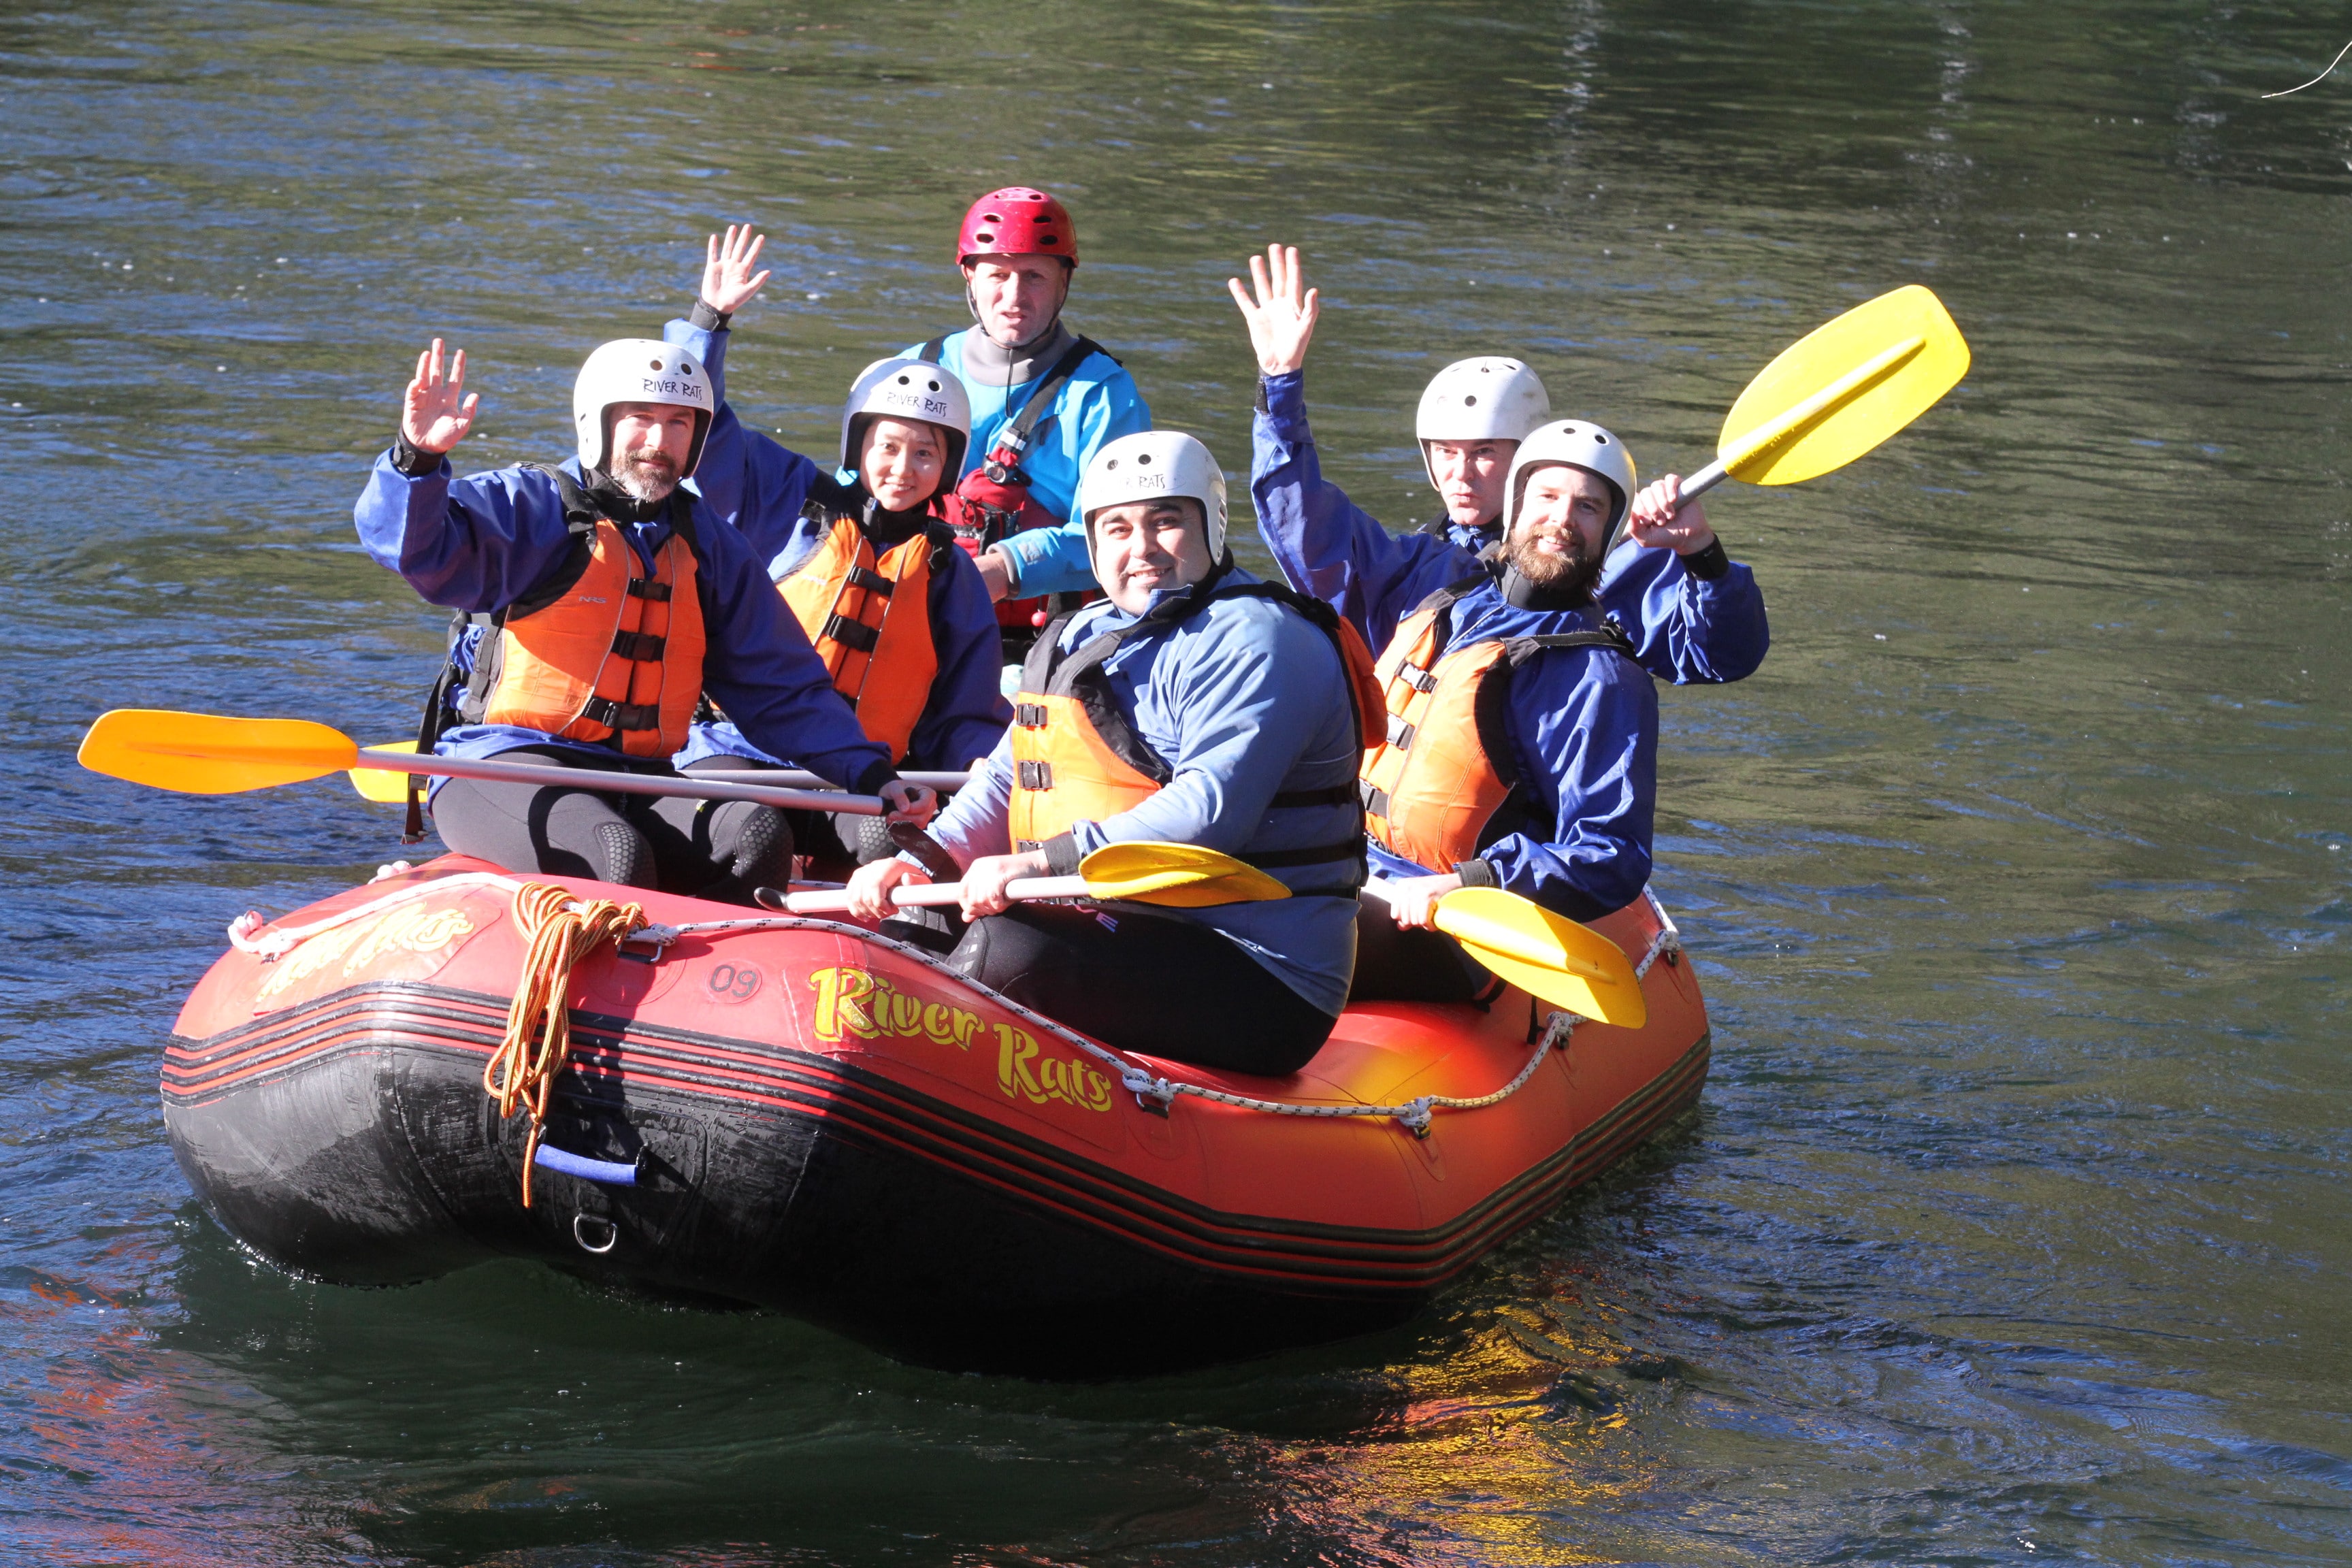 Loadscan team on rubber boat